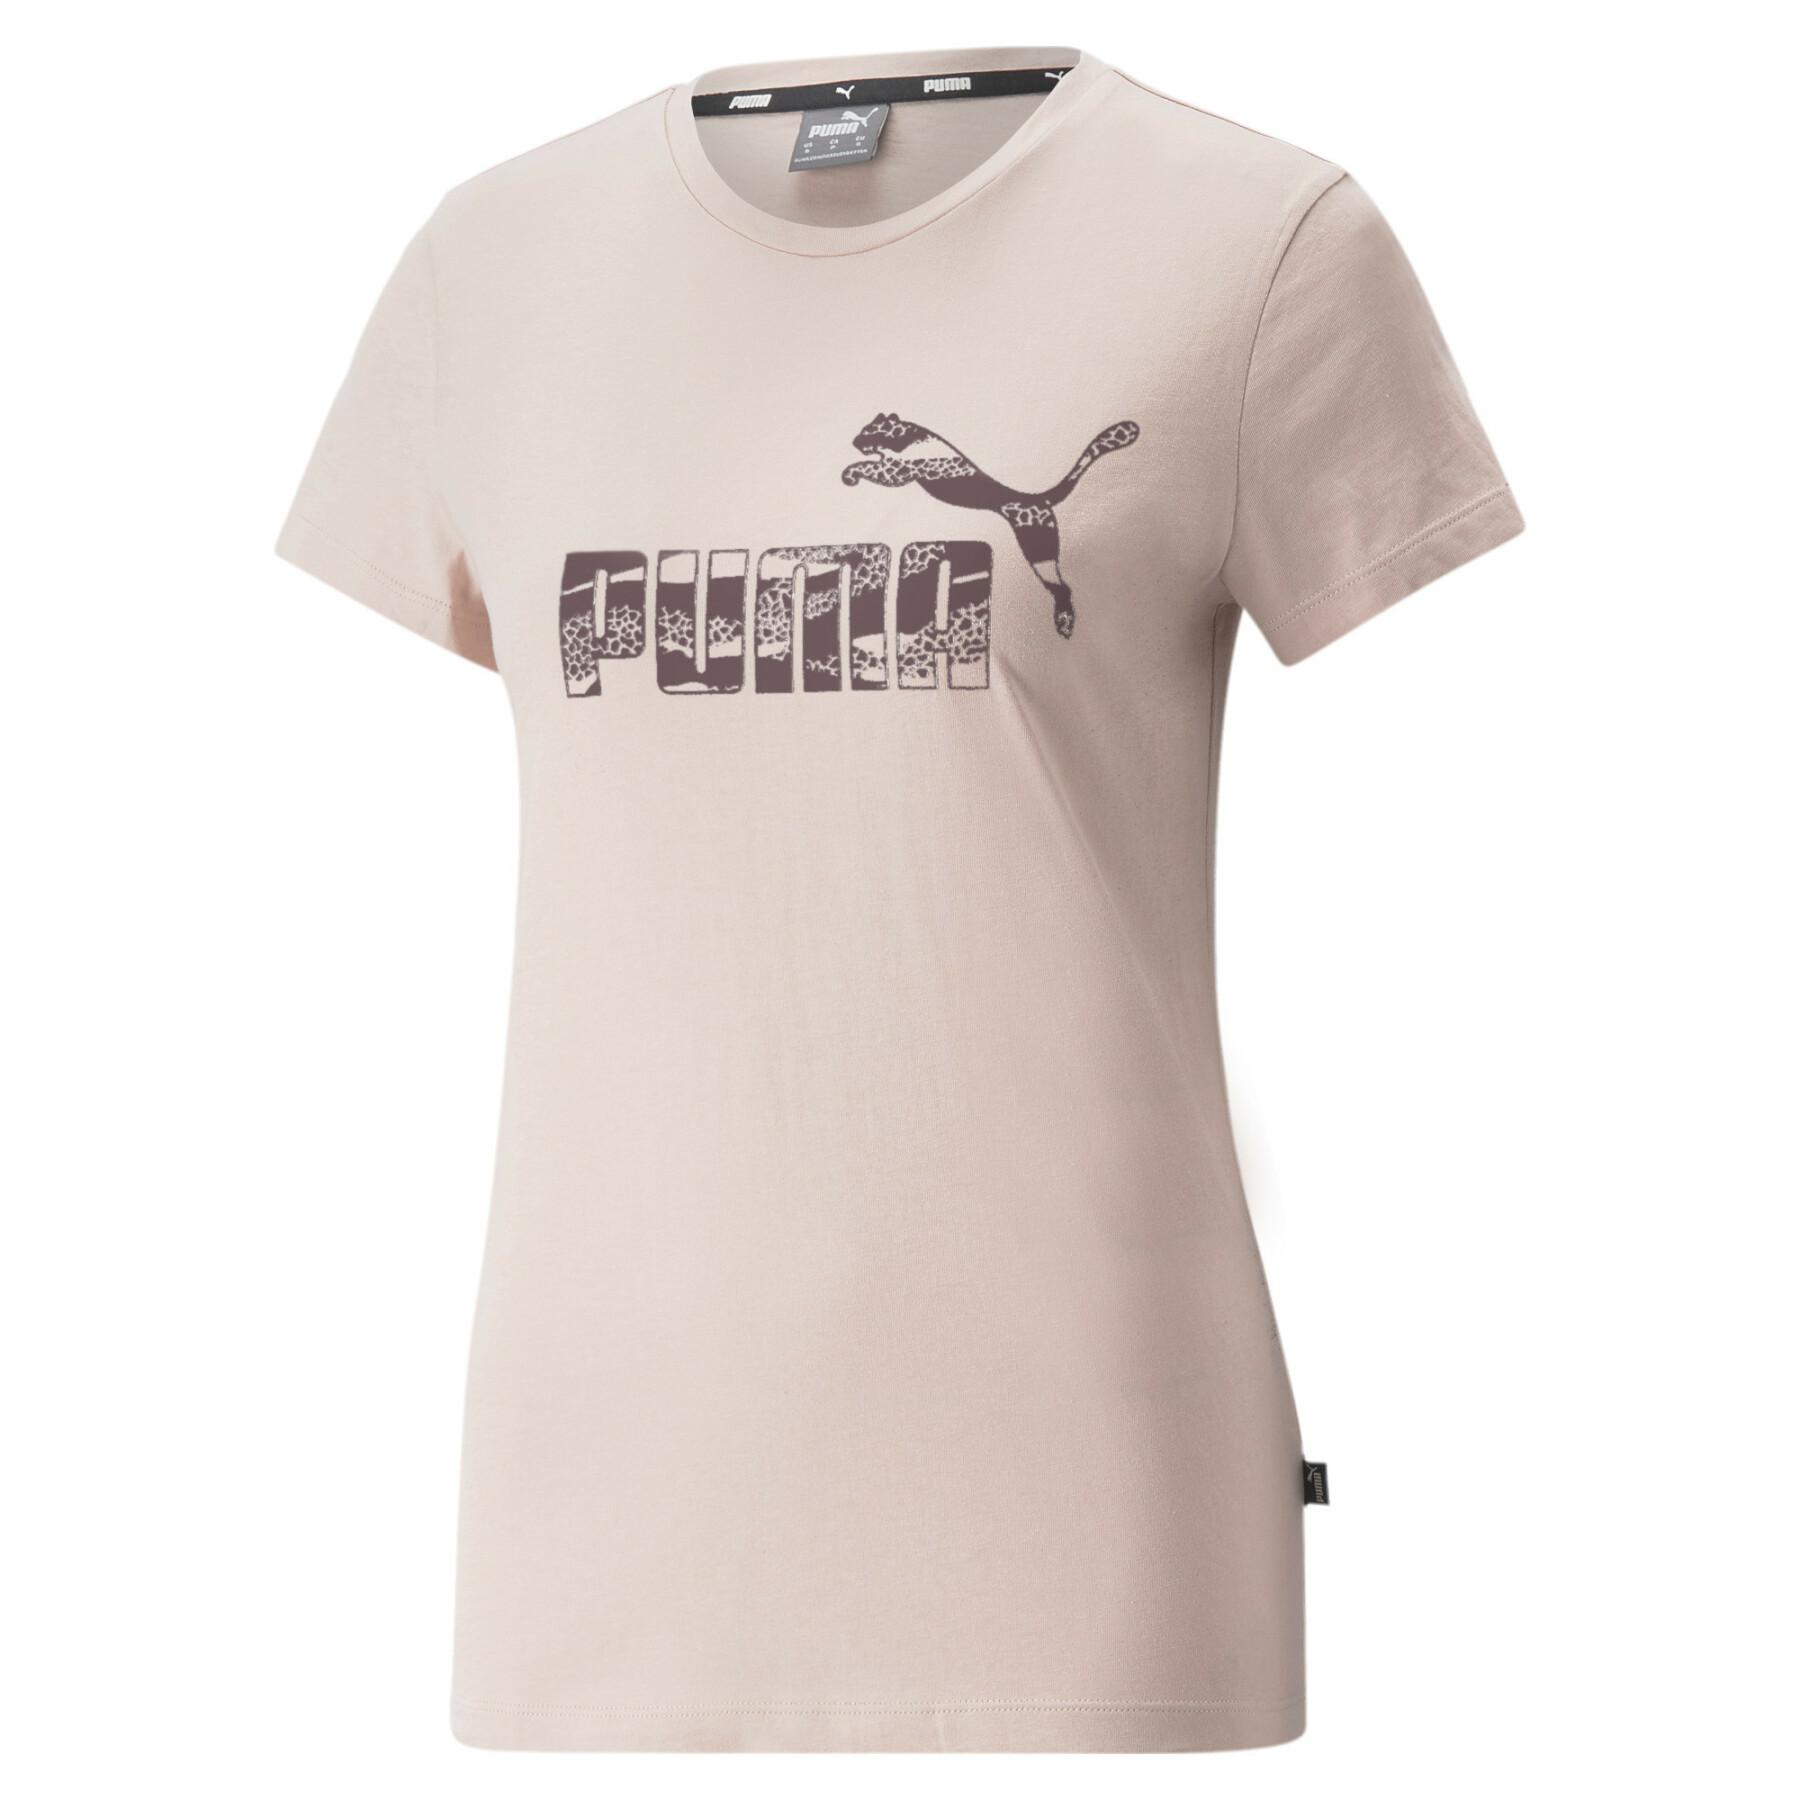 Animal T-shirt woman Puma ESS+ - T-shirts - Lifestyle Lifestyle - Woman